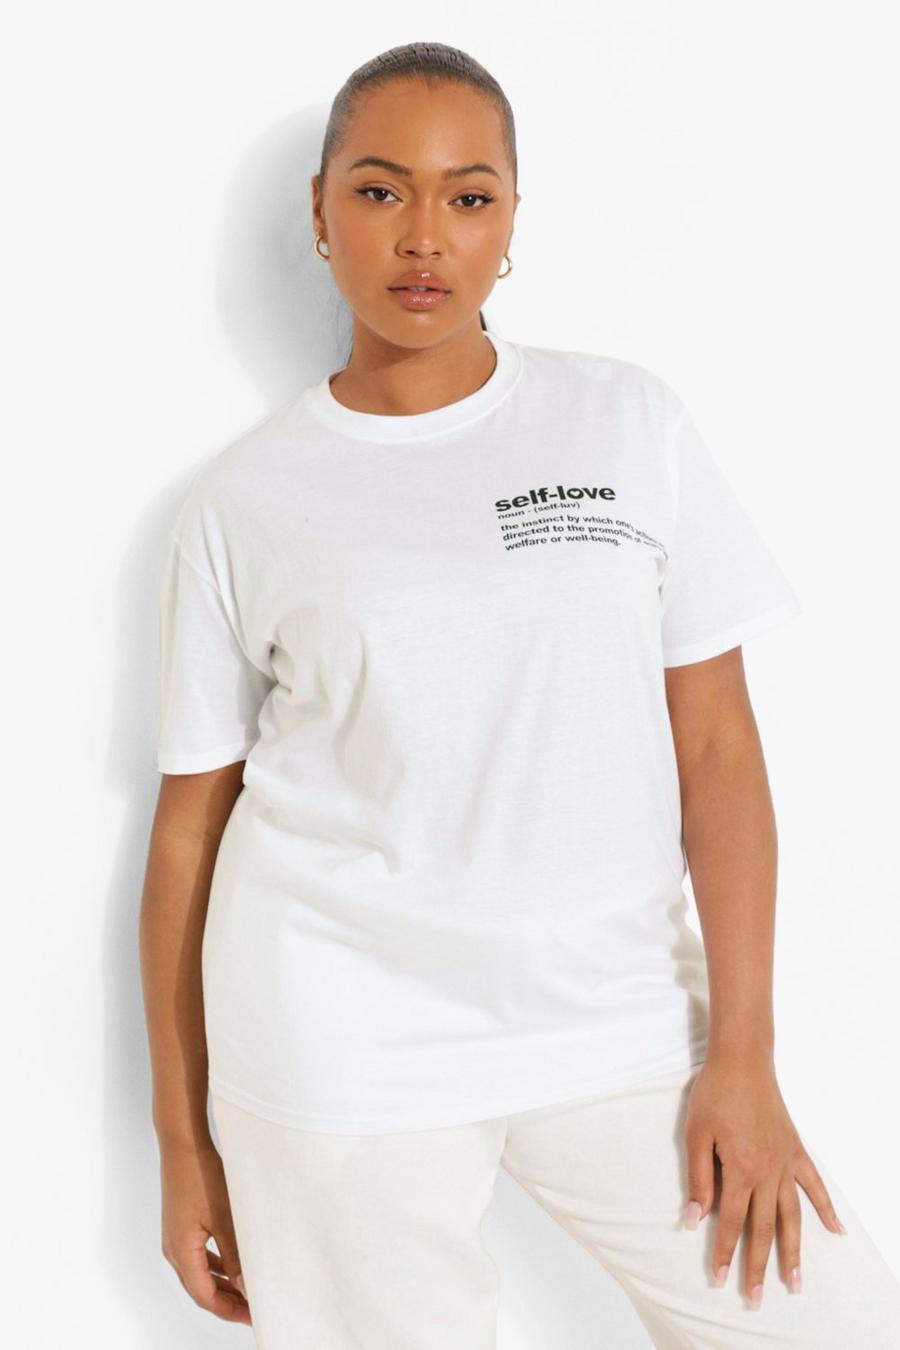 T-shirt Plus Size con slogan Self Love stampato ad altezza taschino, Bianco blanco